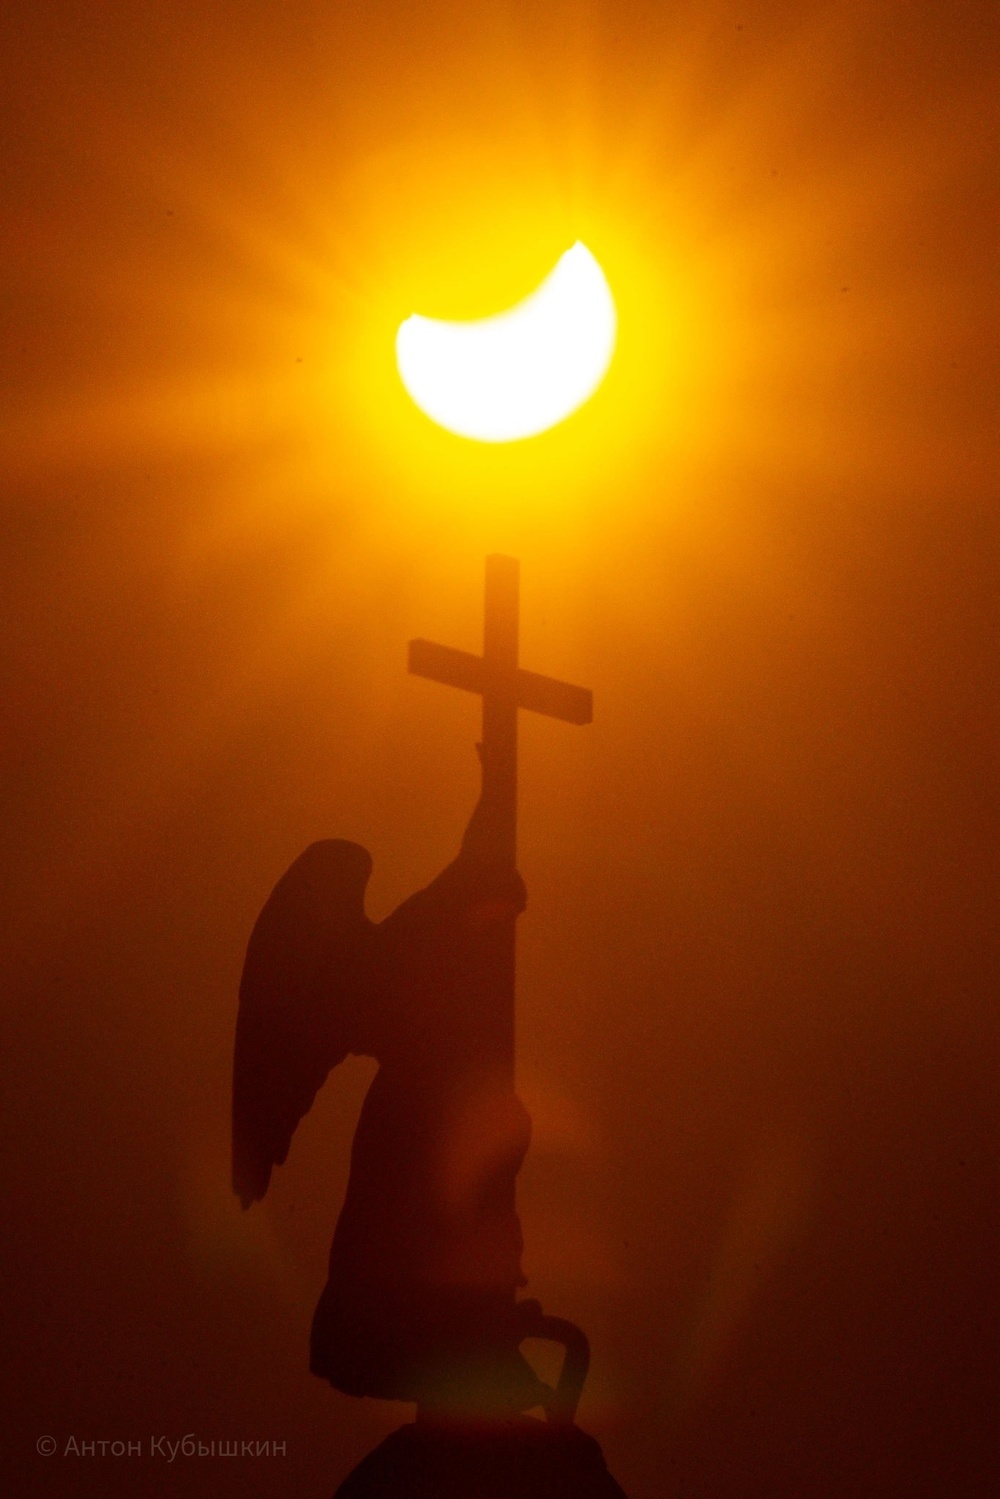 Солнечное затмение и гало: как петербуржцы наблюдали астрономическое явление 25 октября